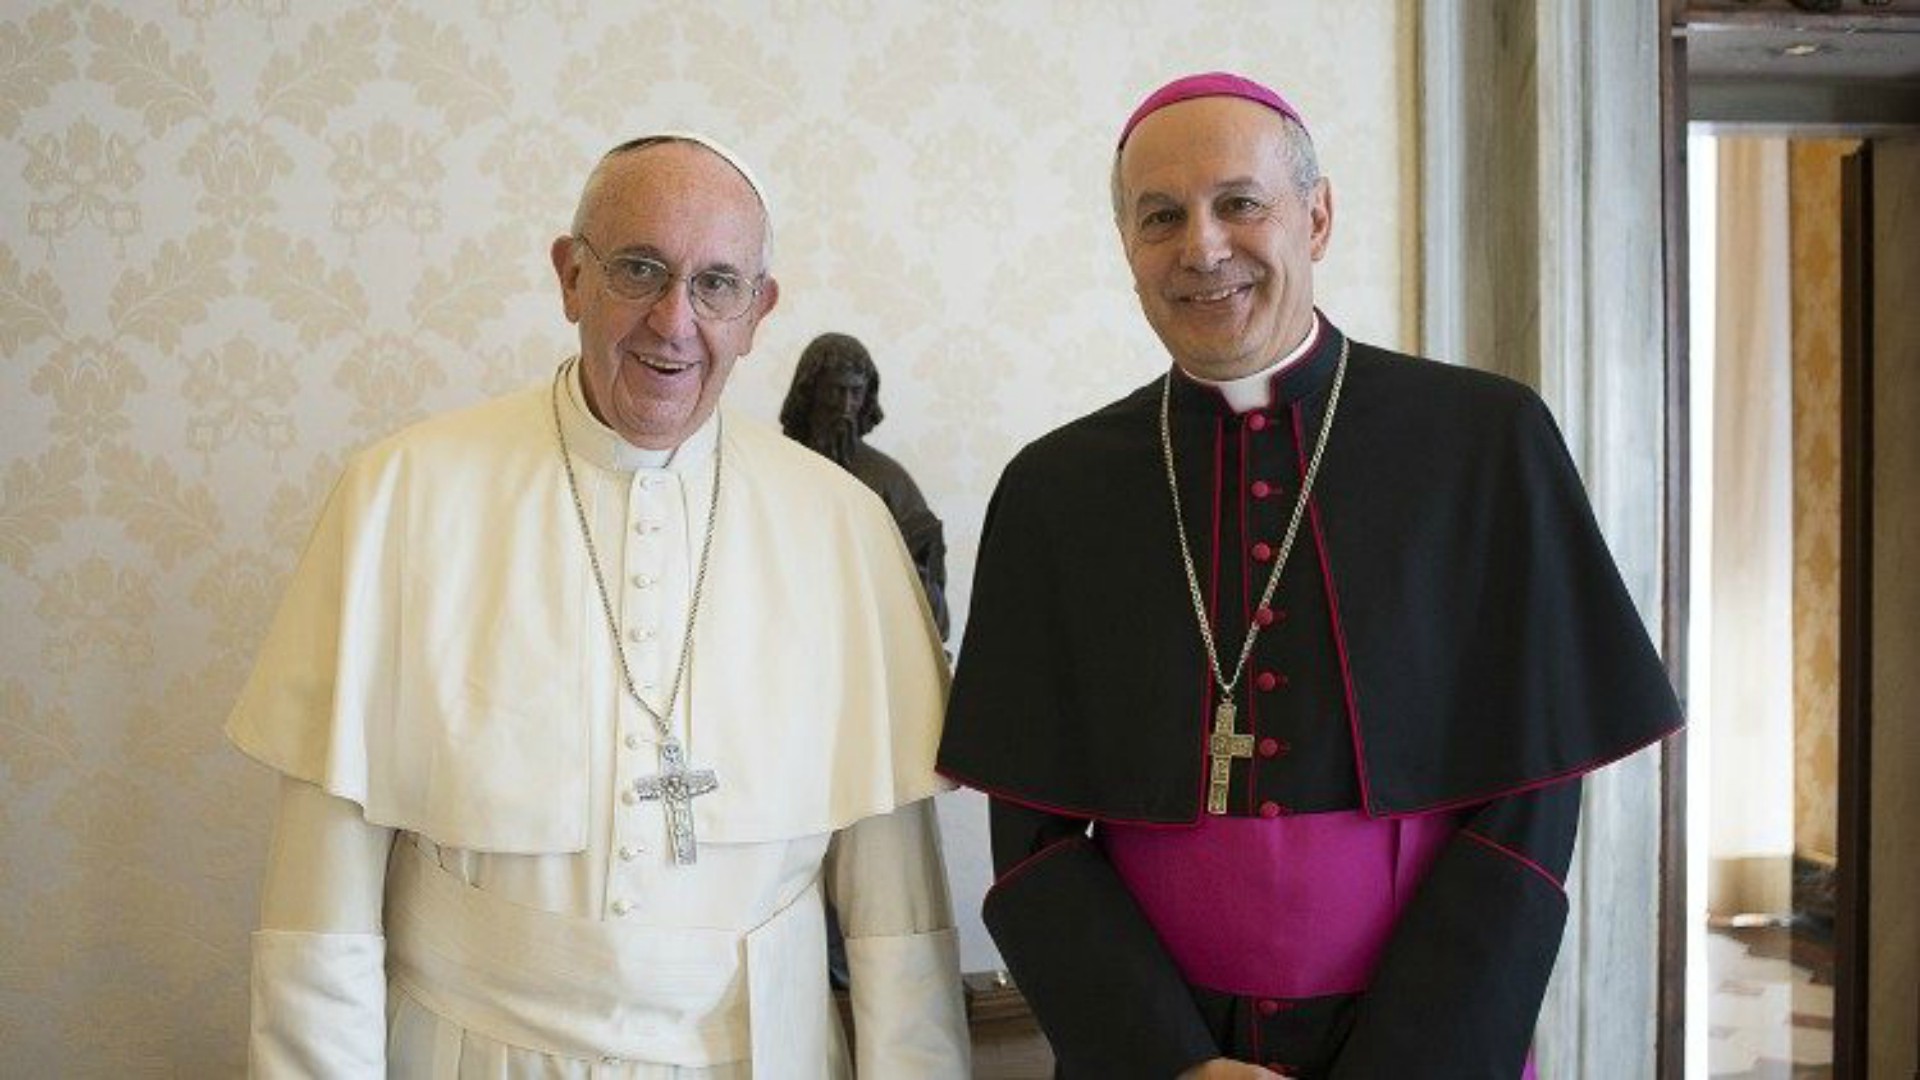 Le pape François a nommé Mgr Gabriele Caccia, nouvel observateur permanent du Saint-Siège auprès des Nations Unies à New York  | © Vatican Media